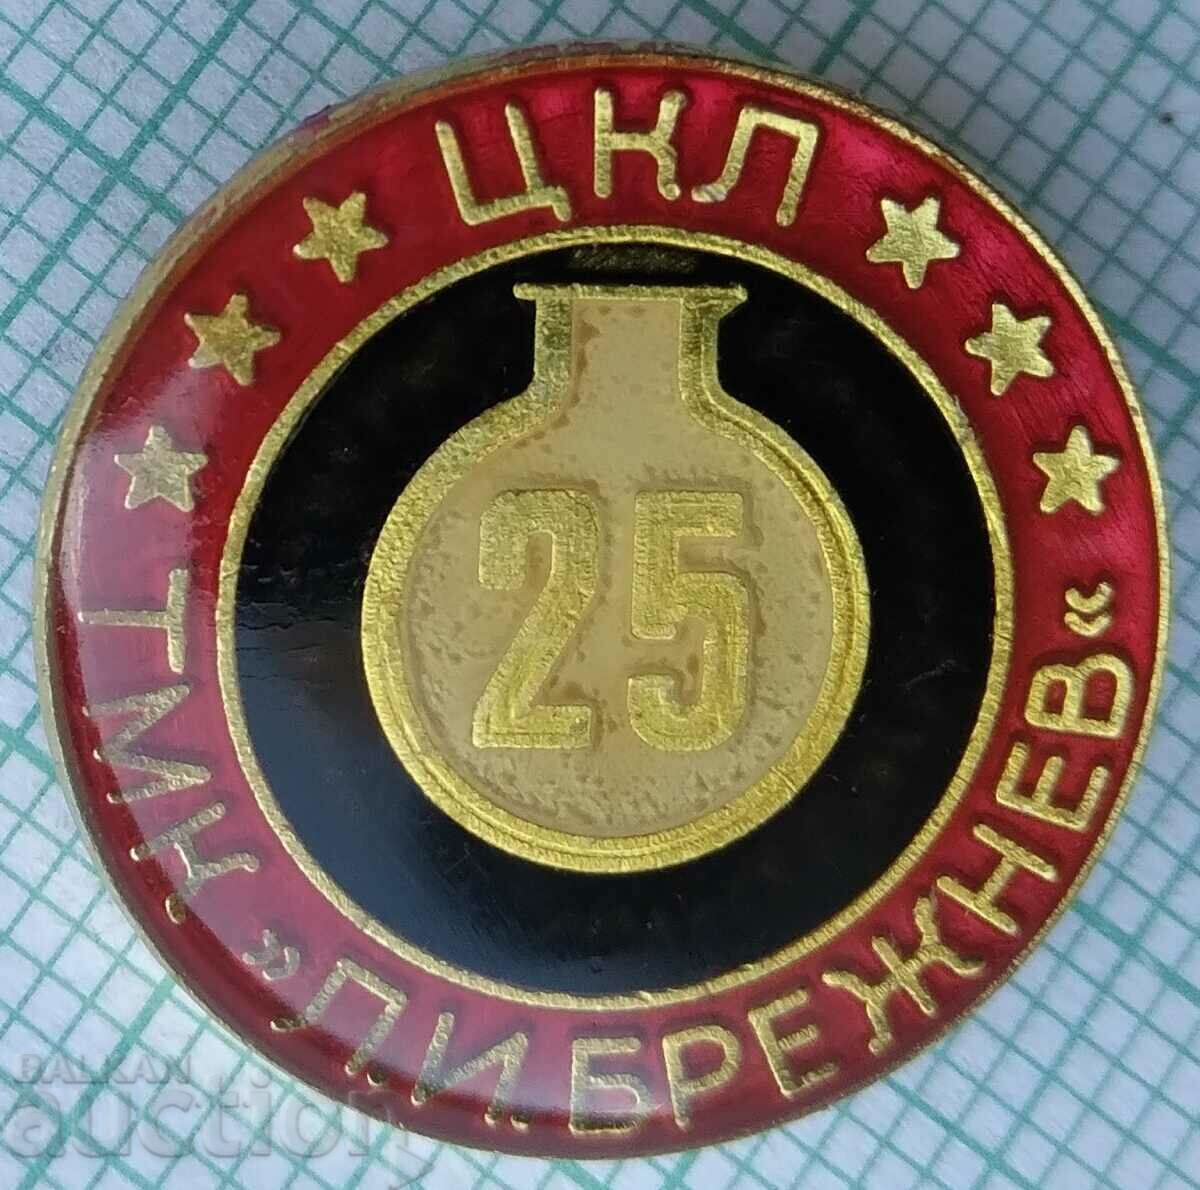 15594 Σήμα - 25 χρόνια TSK TLM Leonid Brezhnev